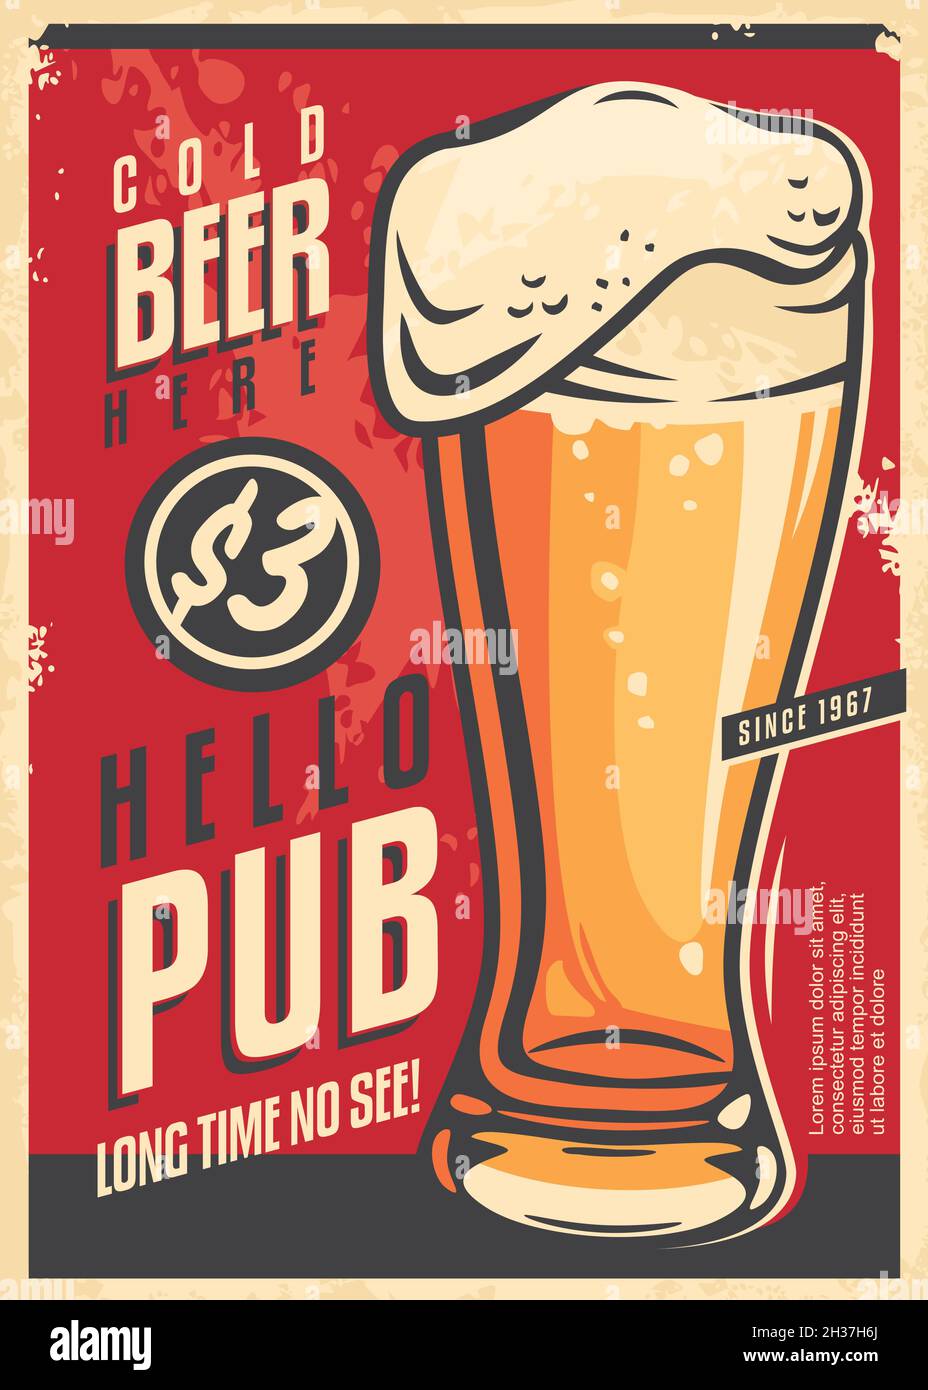 Werbung im Pub-Wanddekor mit einem Glas kaltem Bier und einer ansprechenden Botschaft. Bier trinken Retro-Poster auf rotem Hintergrund. Vintage-Vektorbild Stock Vektor